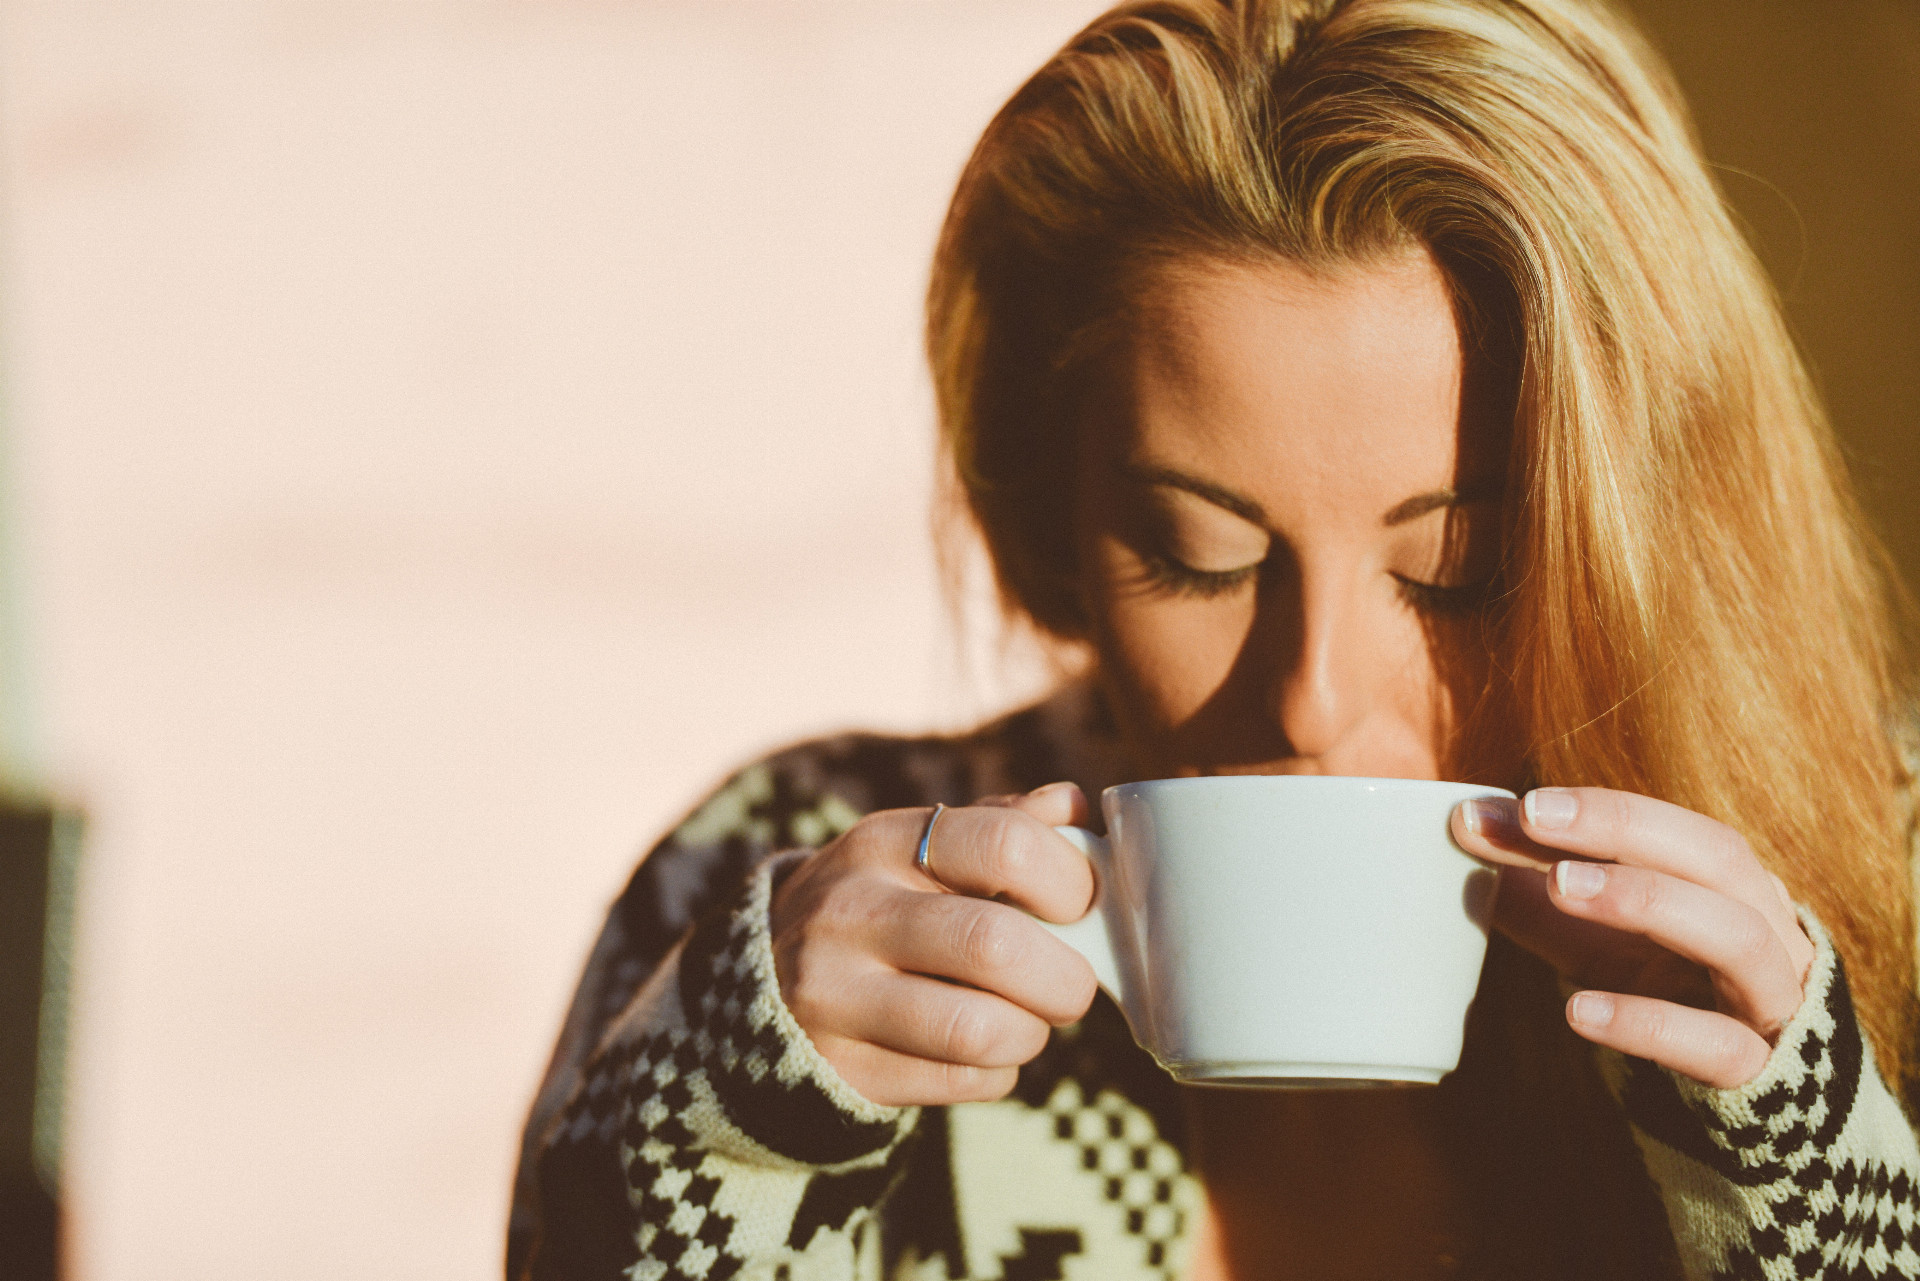 Jedna štúdia publikovaná v Annals of Internal Medicine zistila, že konzumácia kávy denne môže predĺžiť život. "Spotreba kofeínu je tiež spojená so zníženým rizikom cukrovky," dodáva lekár Tik Pau. Čaj je už dlho považovaný za zdravotný prostriedok vďaka svojej bohatej úrovni antioxidantov. "Čaj má protirakovinové vlastnosti a vlastnosti znižujúce cholesterol a ukázalo sa, že chráni mozog pred poškodením voľnými radikálmi a posilňuje kosti proti osteoporóze," hovorí Kien Vuu, onkologický rádiológ. "Čaj tiež podľa štúdií znižuje riziko smrti zo všetkých foriem kardiovaskulárnych ochorení."